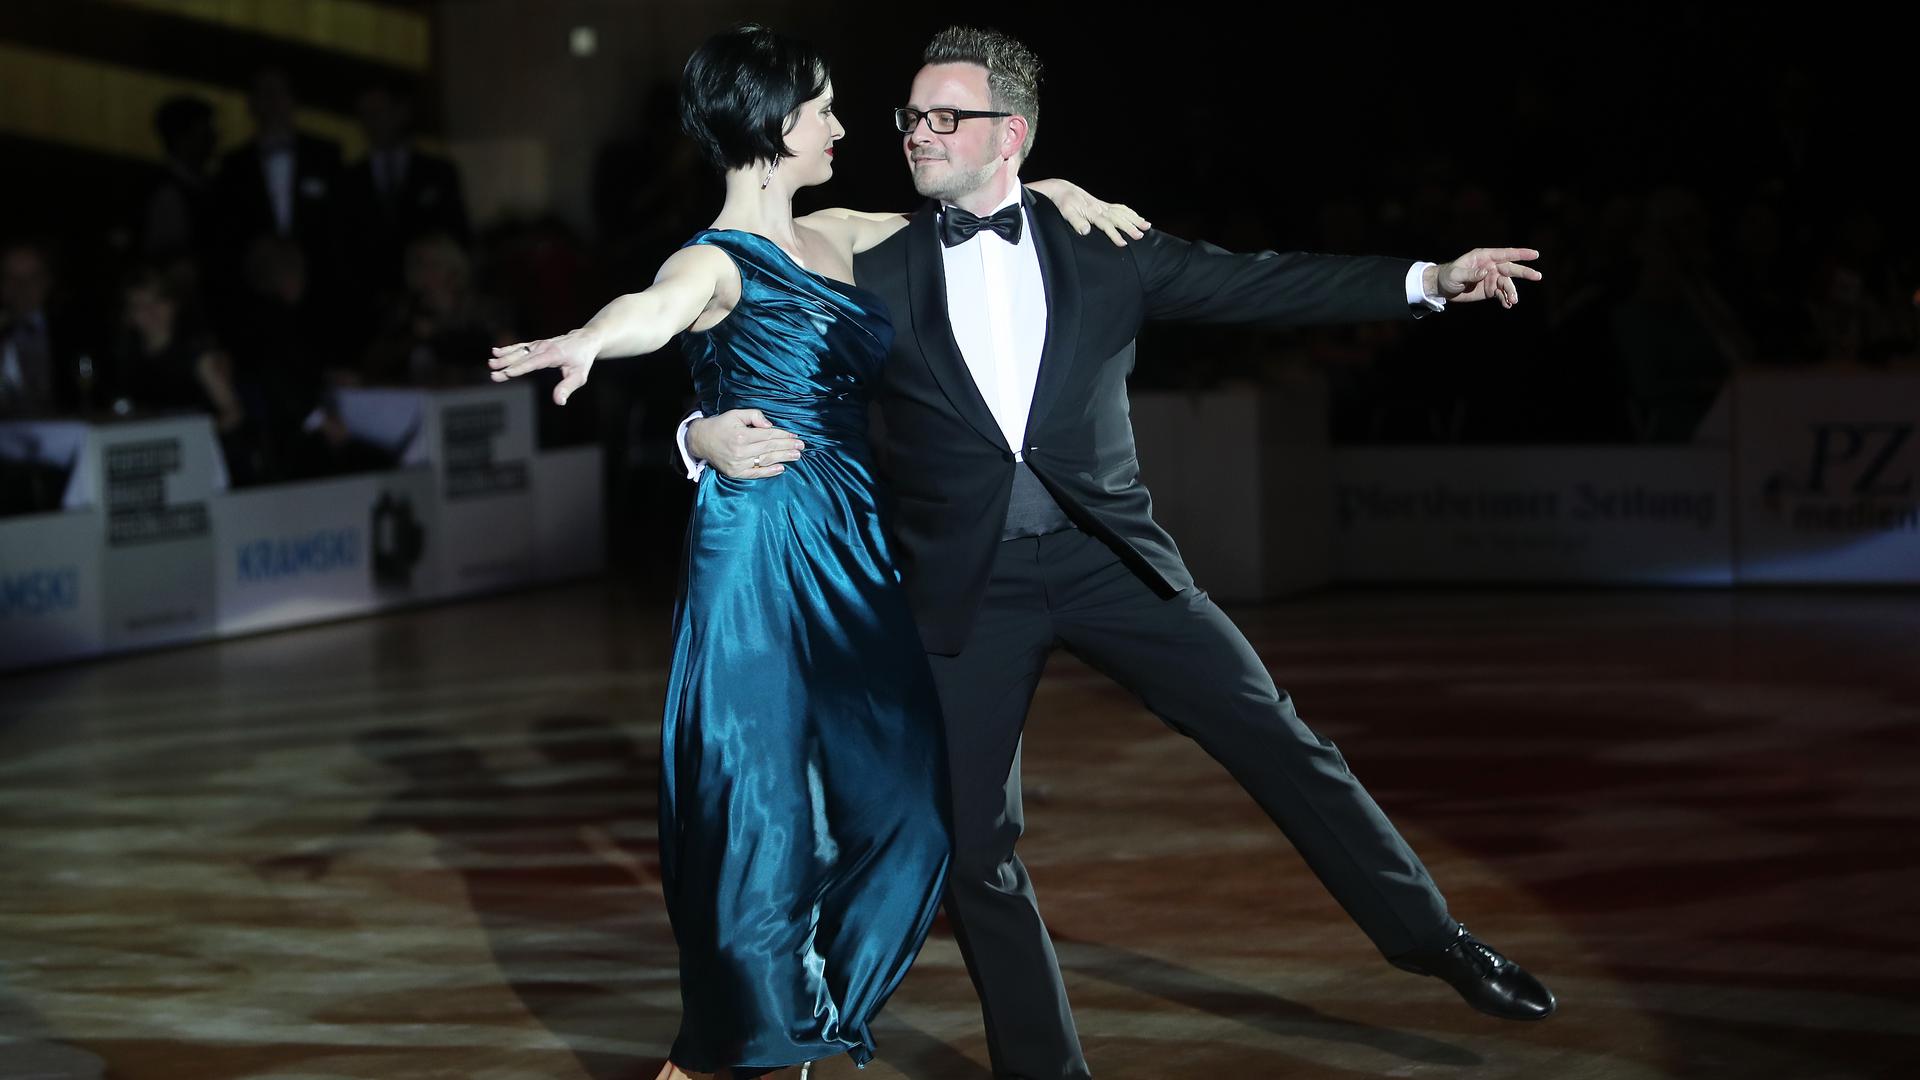 Der OB tanzt: Oberbürgermeister Peter Boch und seine Frau (hier beim Goldstadtpokal 2020) gebührt traditionell der erste Tanz. Entsprechend sei man schon „im Training“, verrät das Stadtoberhaupt.